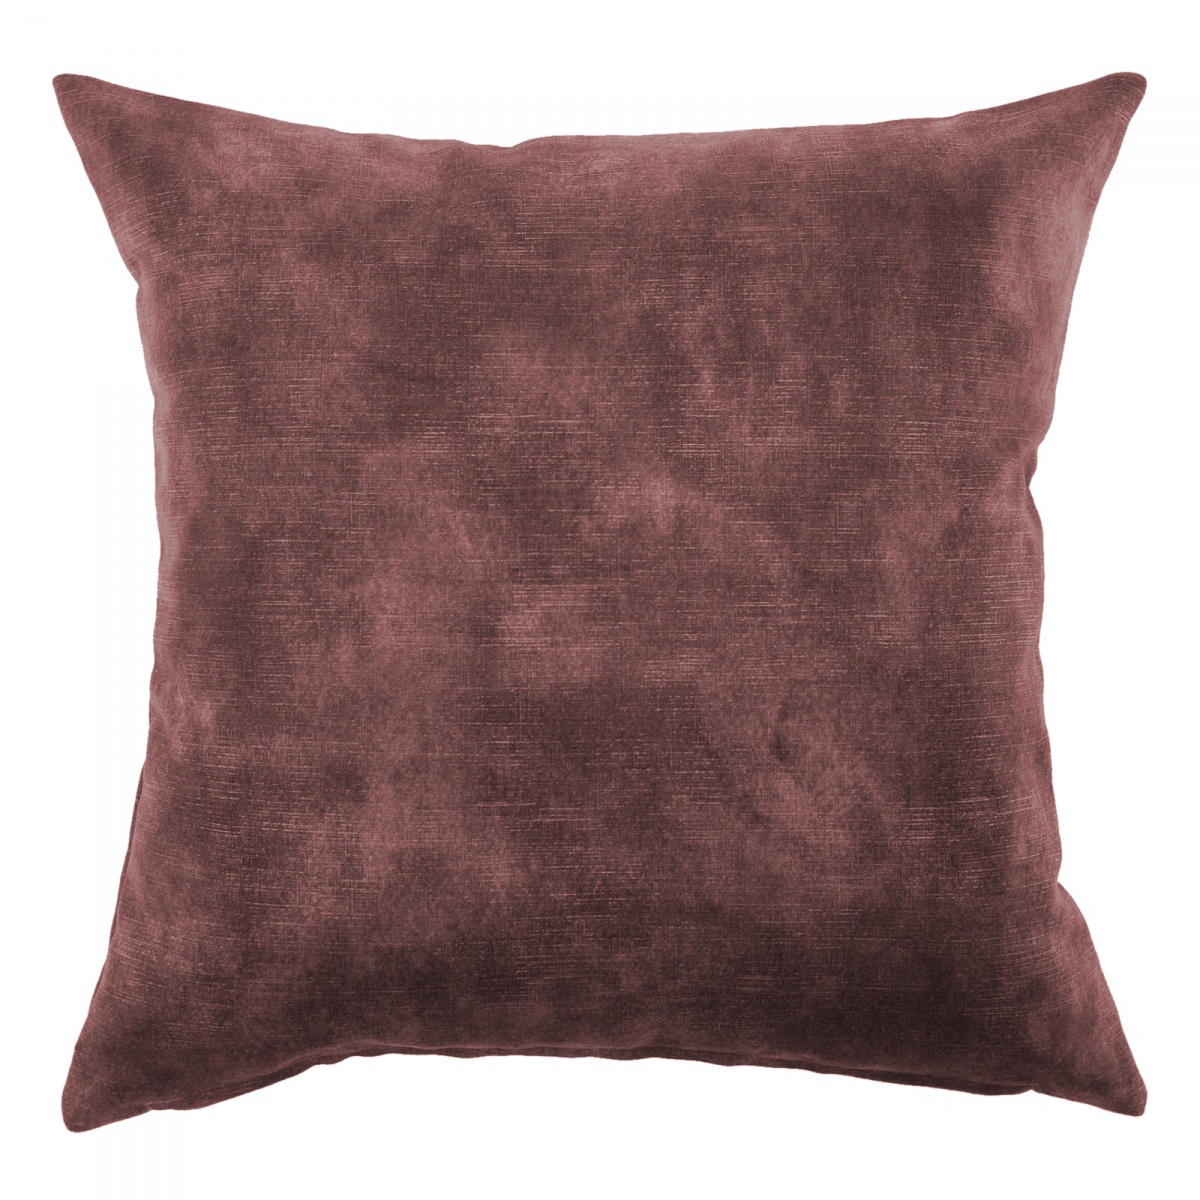 Lovely Oxblood Velvet Cushion - 60x60cm